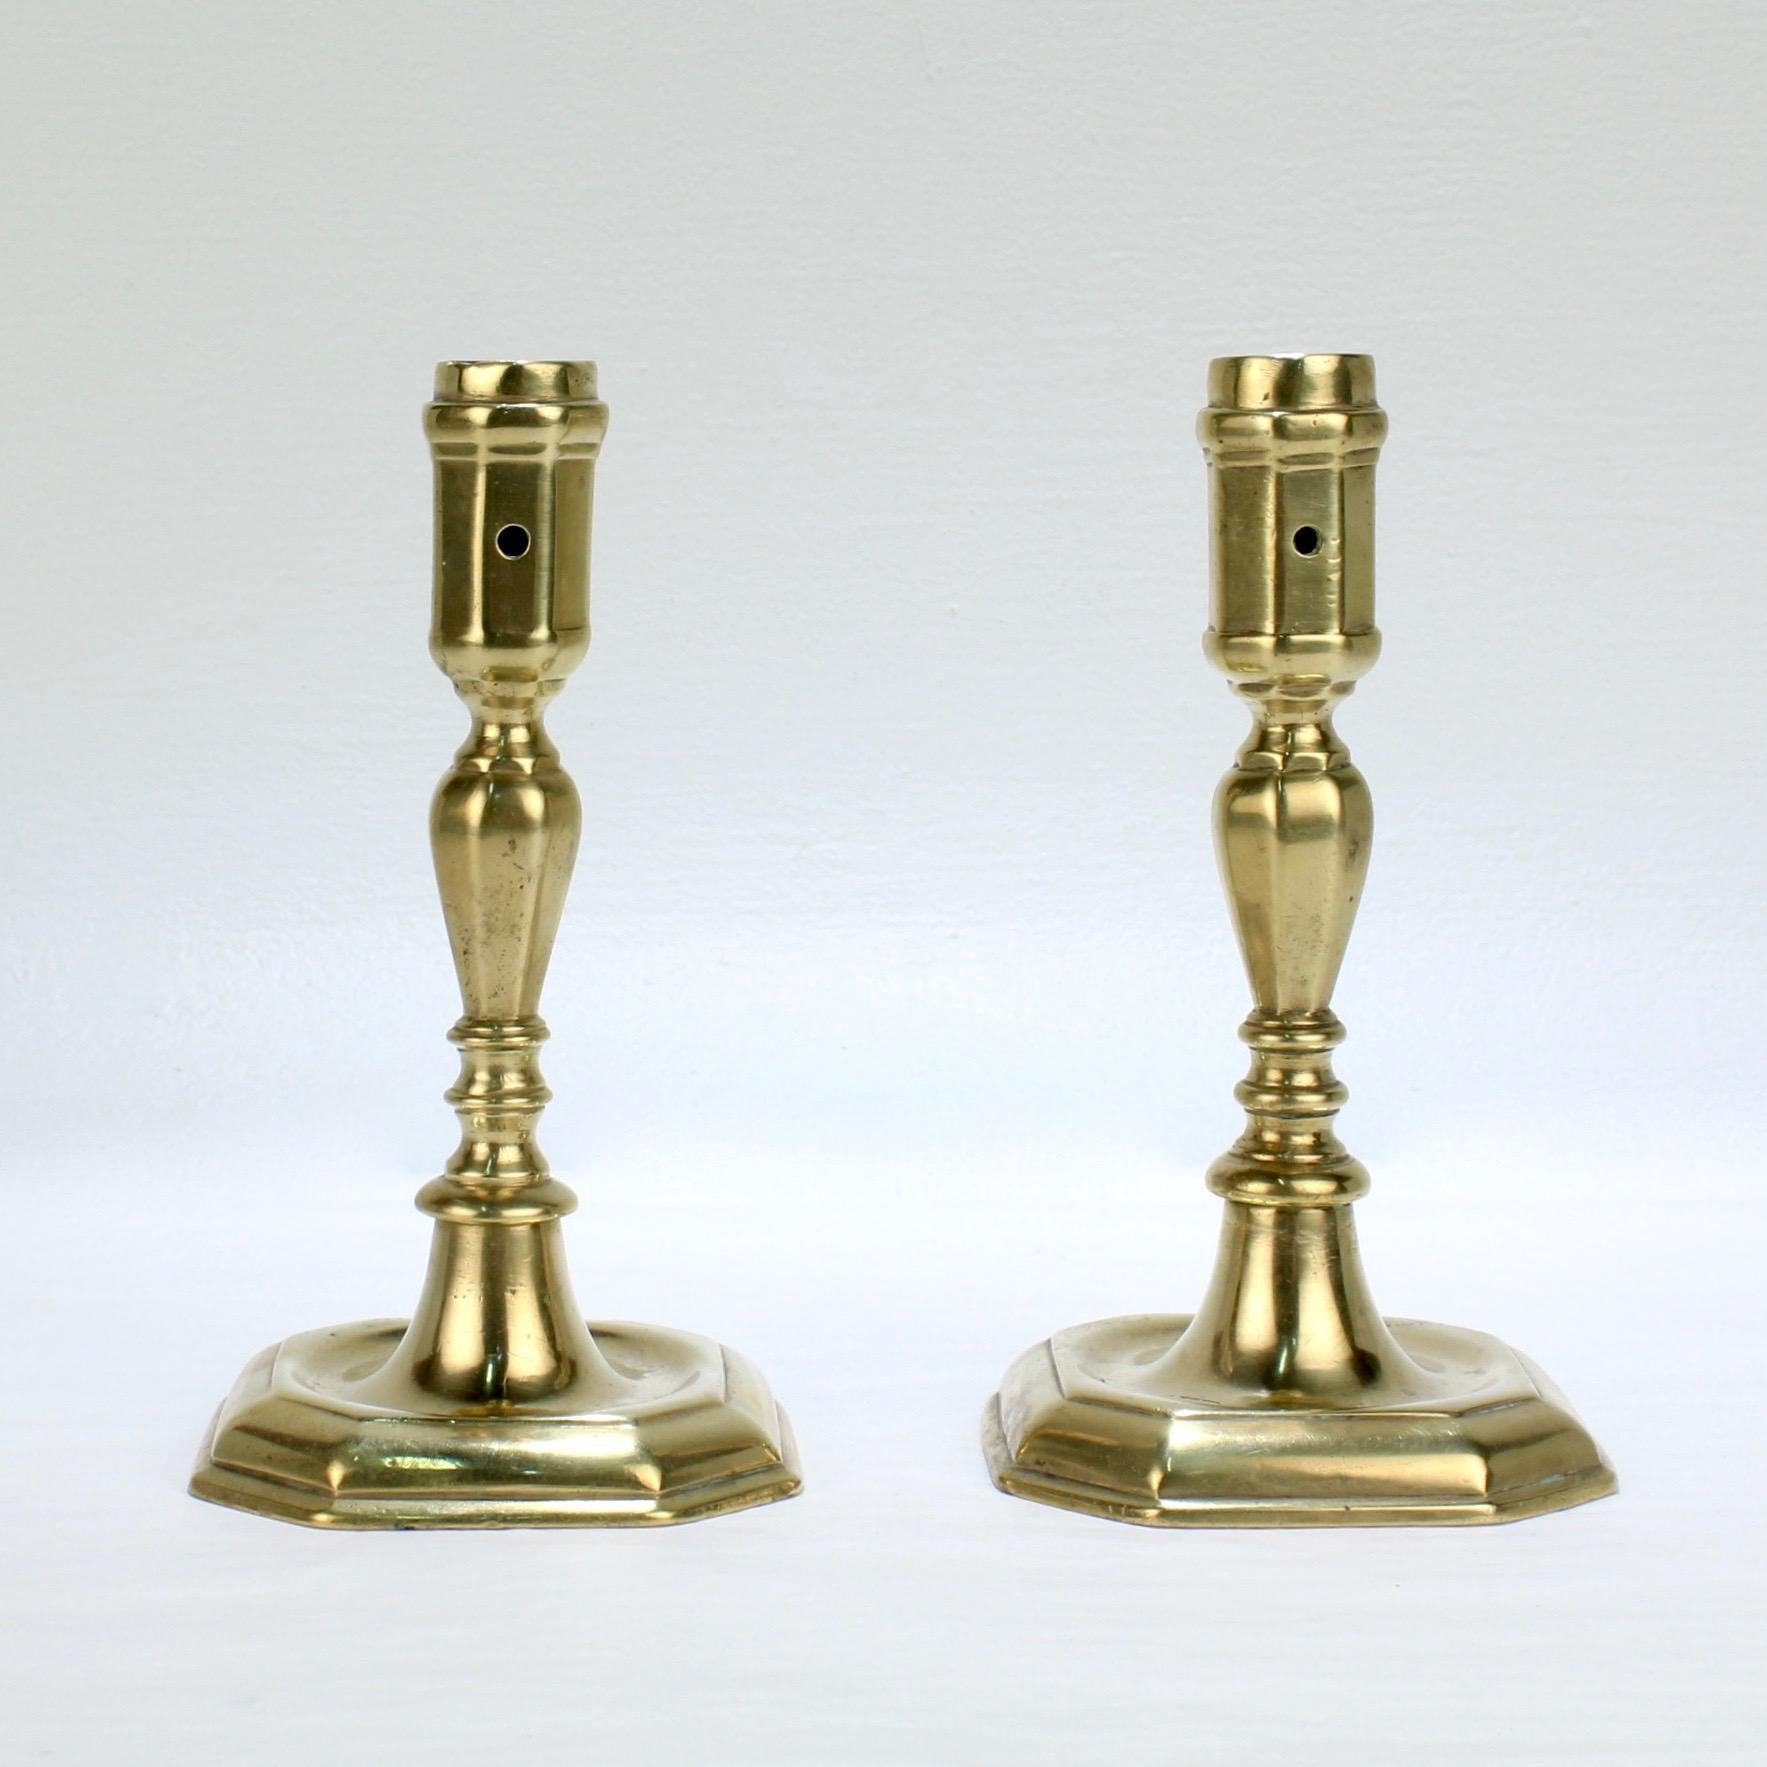 Une très belle paire de chandeliers en laiton du XVIIIe siècle.

Chacune a une base octogonale supportant des tiges facettées et des coupes de bougies. (Chaque coupe de bougie est munie d'un trou permettant d'enlever la cire).

Des bougeoirs